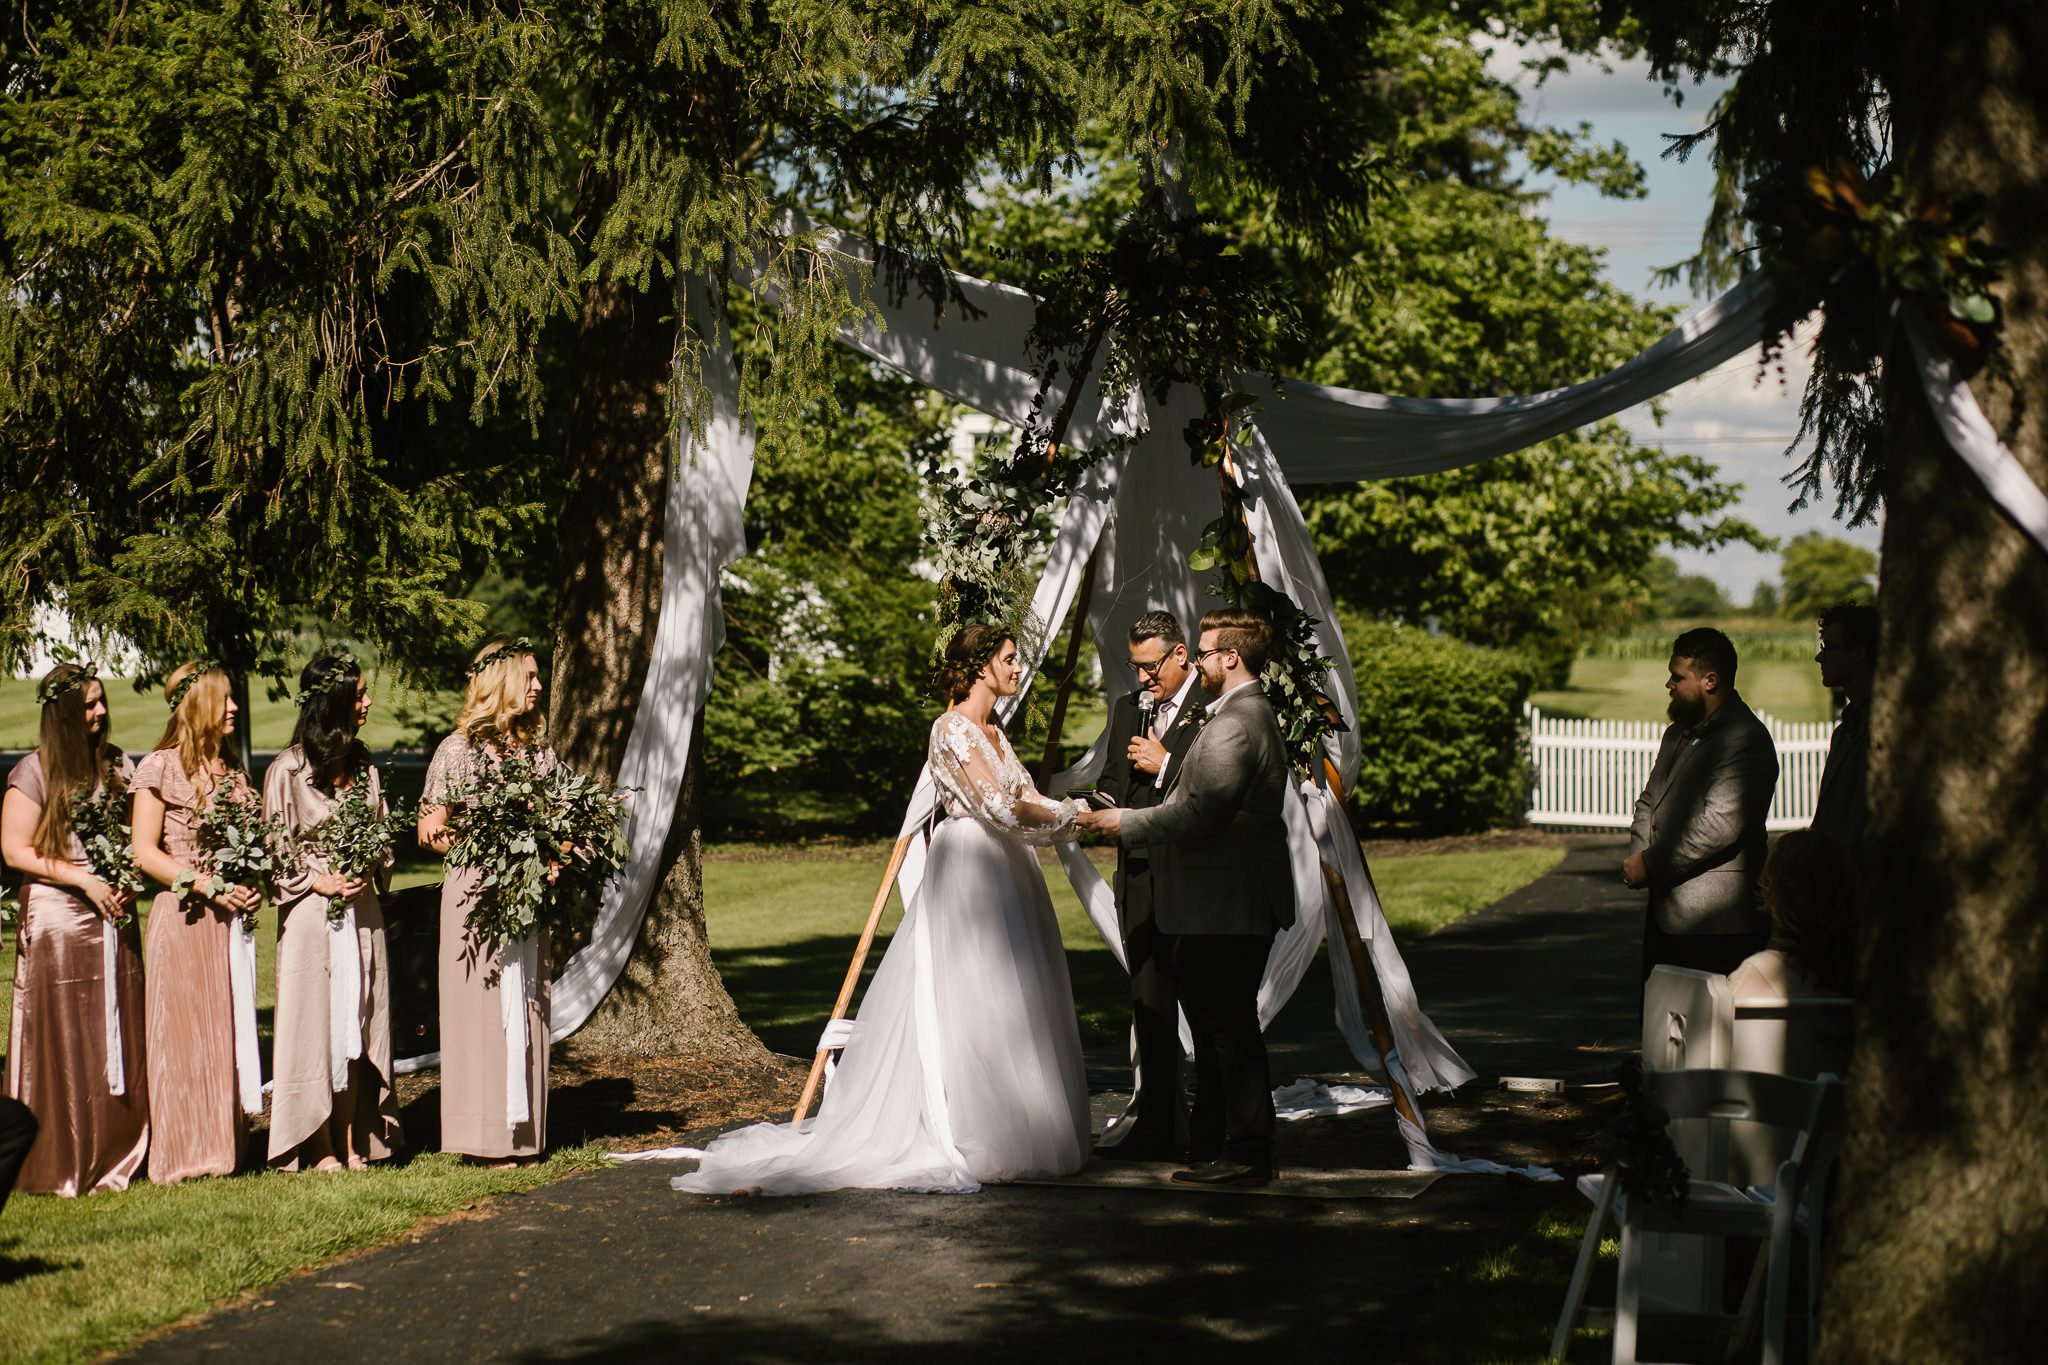 eastlyn and joshua findlay ohio wedding photographers bohemian outdoor wedding-110.jpg